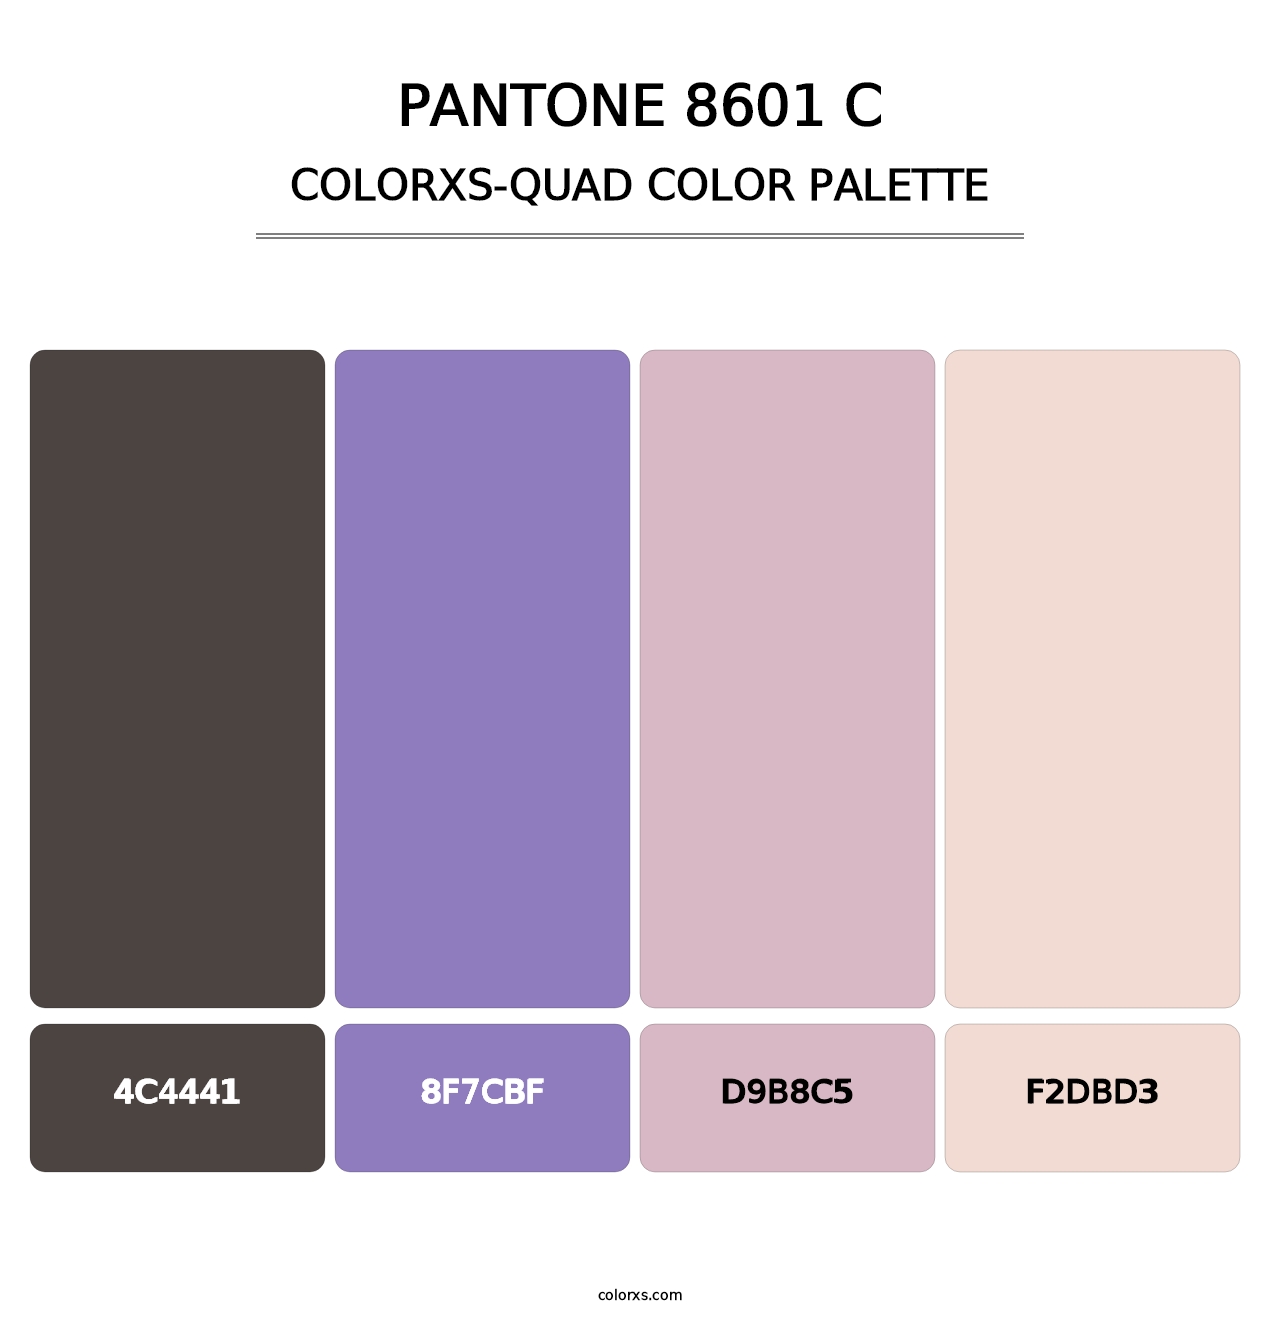 PANTONE 8601 C - Colorxs Quad Palette